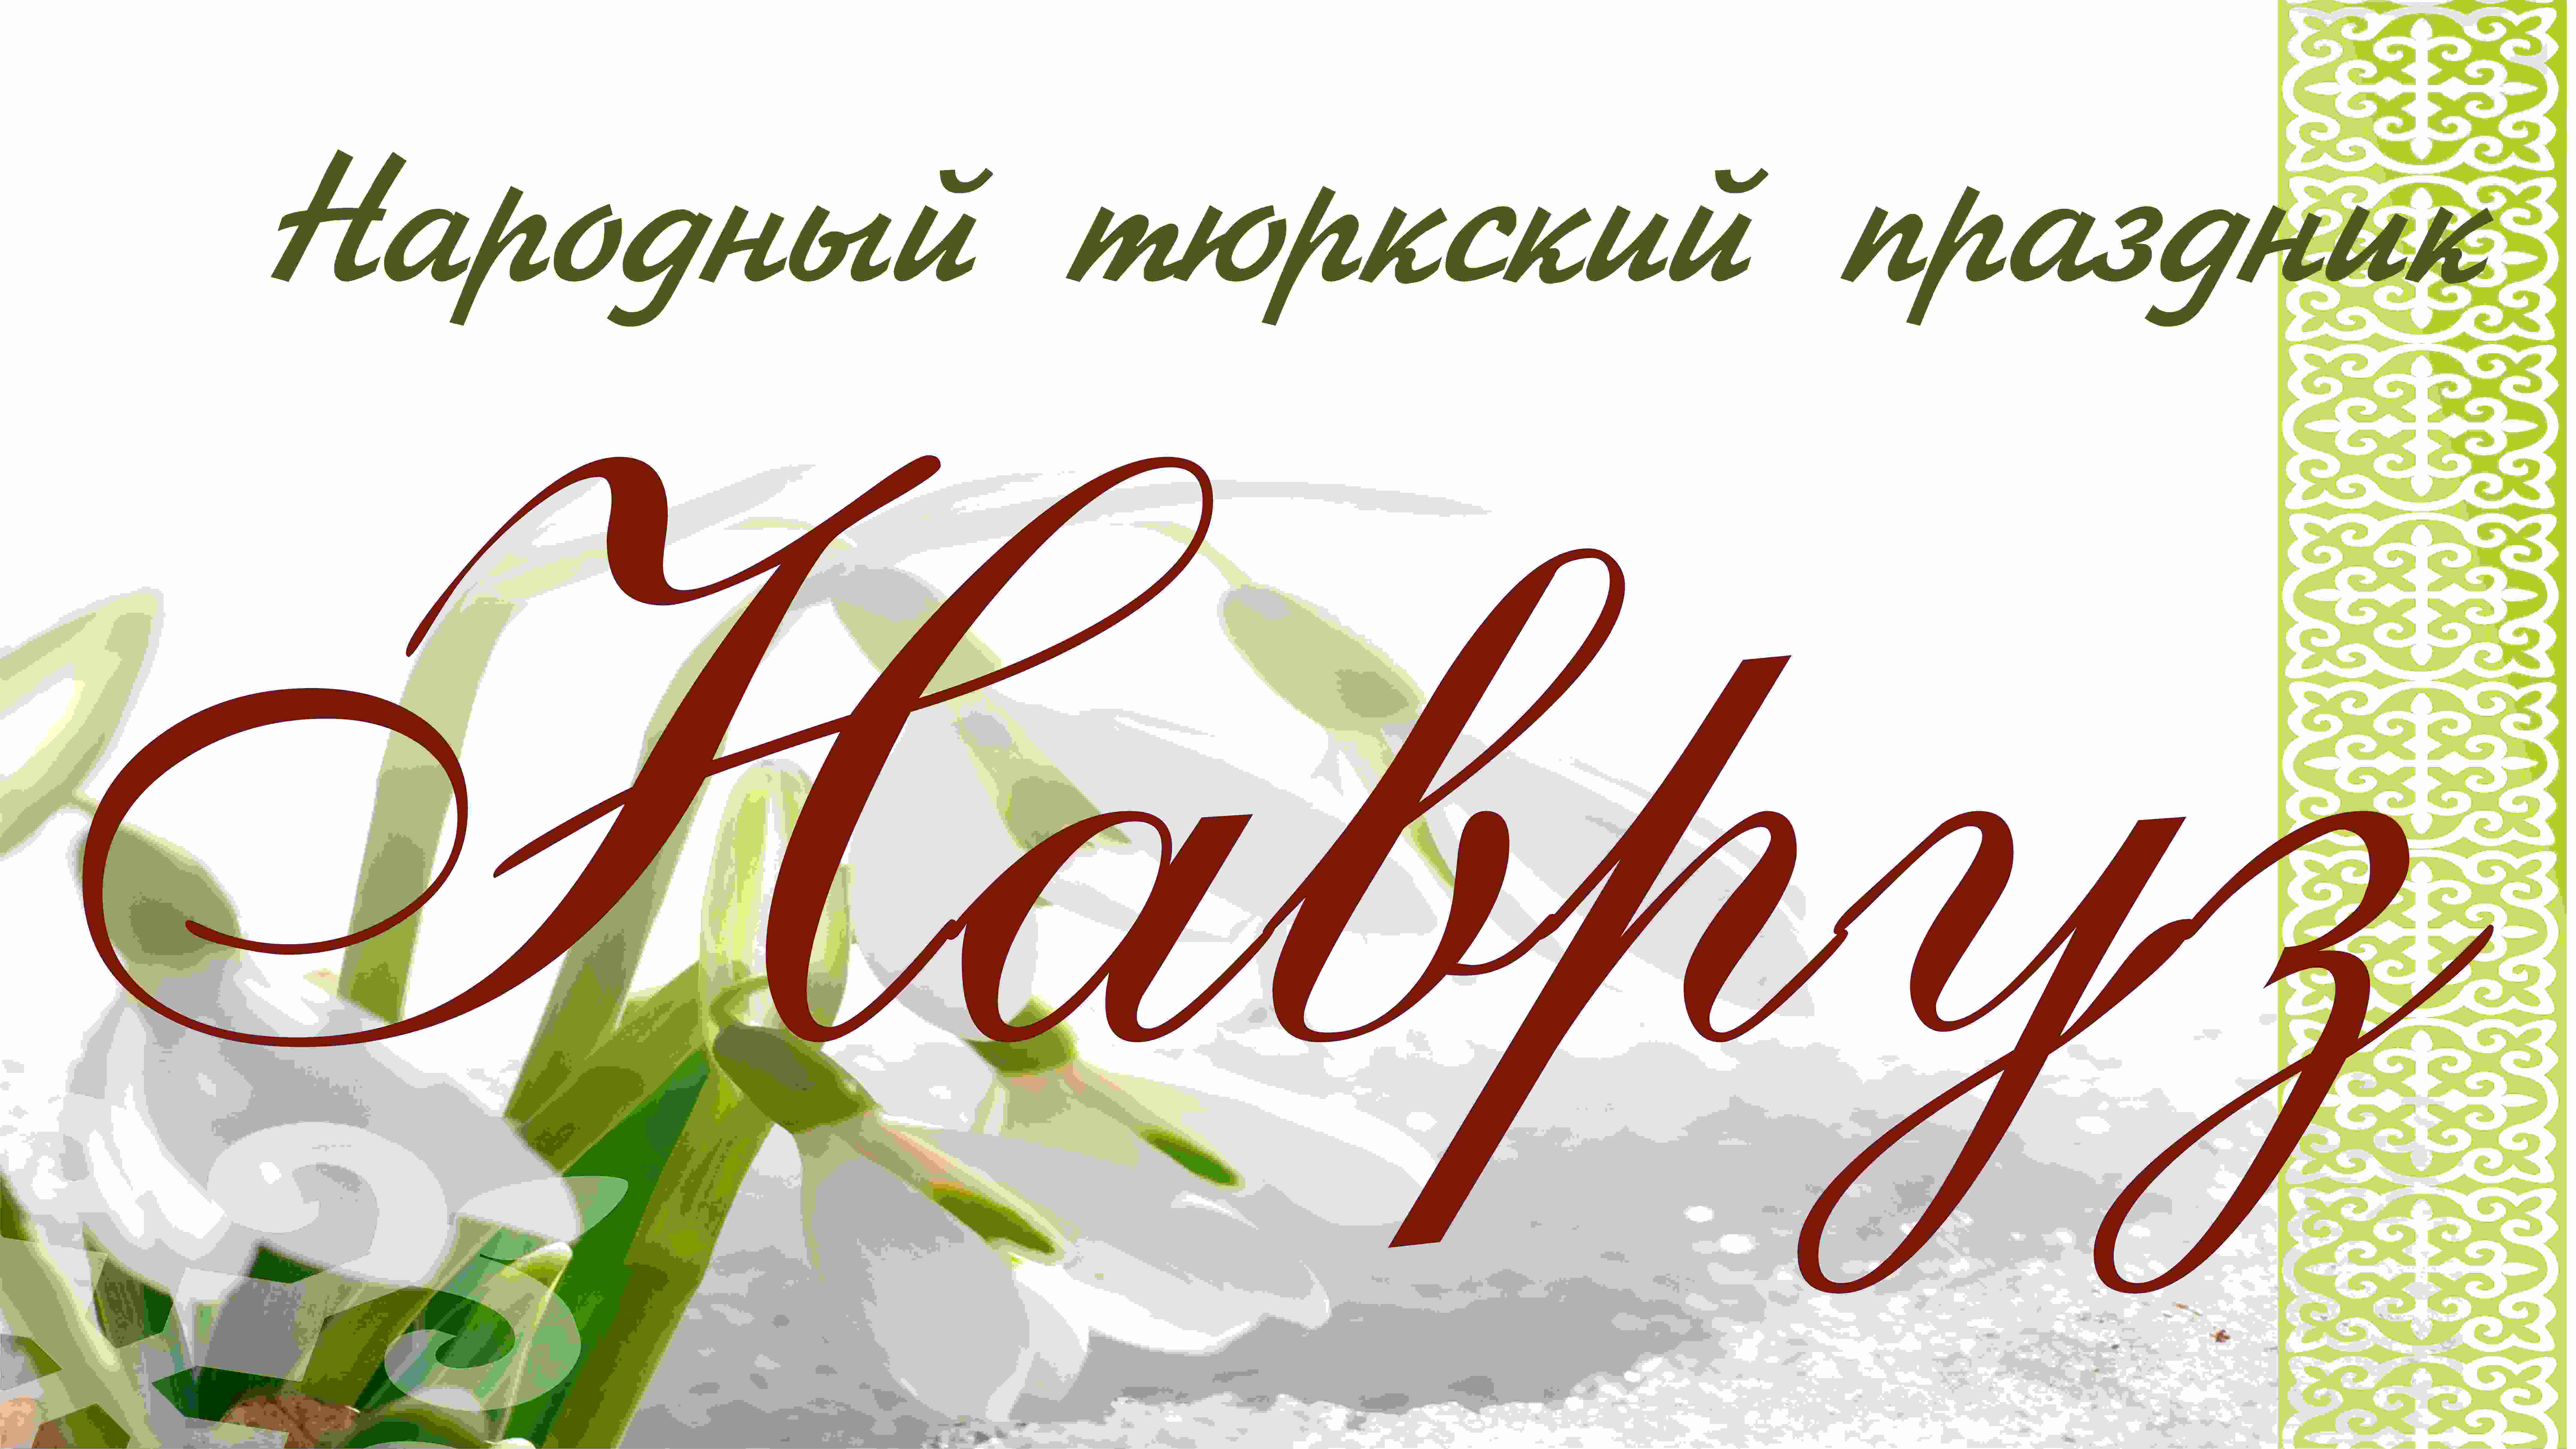 Народный праздник НАВРУЗ
23 марта 2019 года, Новоцарицыно Москаленского муниципального района